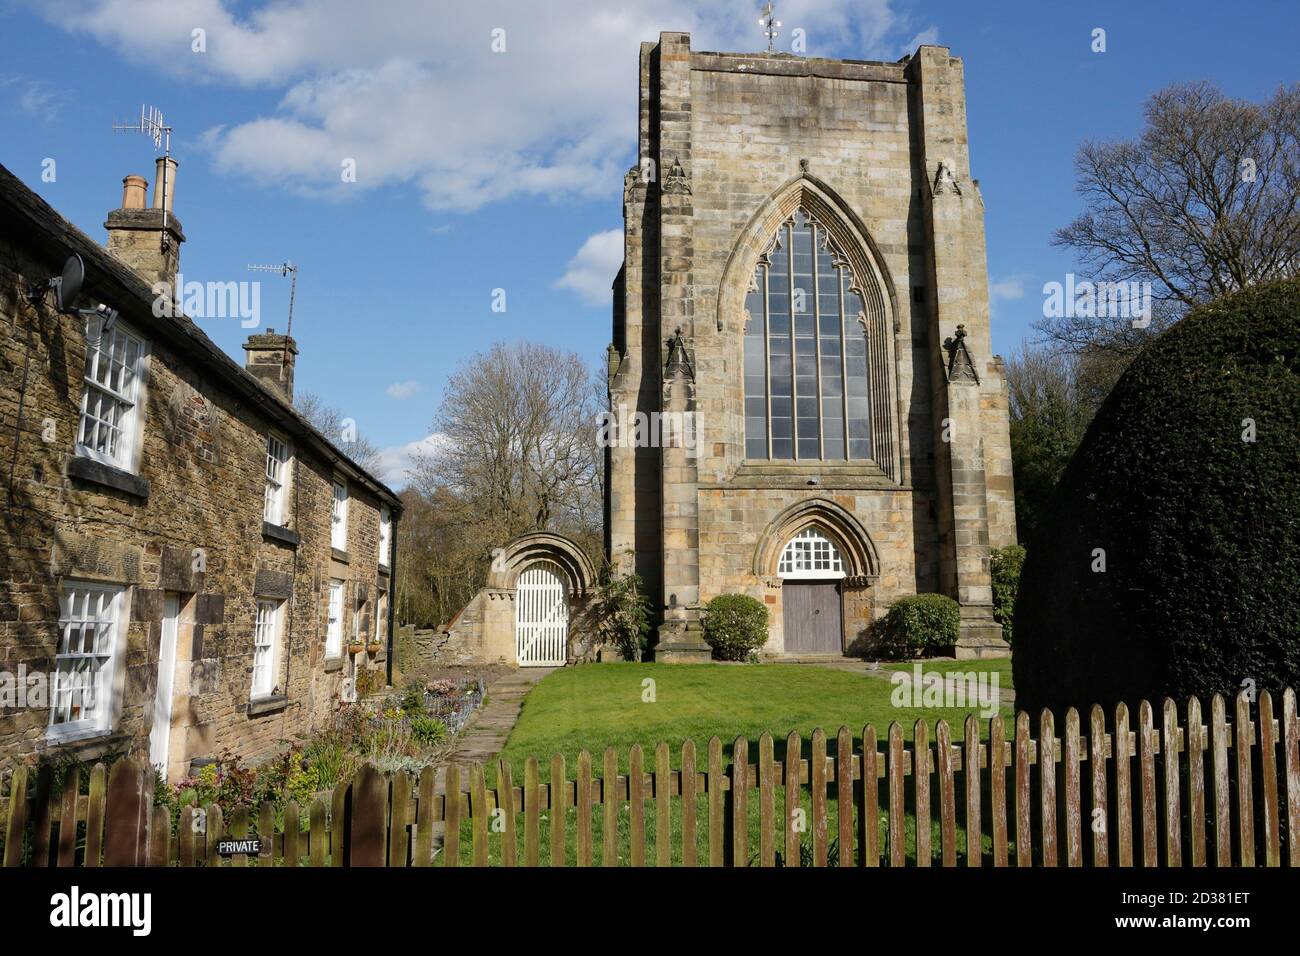 Beauchief Abbey et cottages à Sheffield, Angleterre Royaume-Uni, Grade II* bâtiment classé église de banlieue anglaise Banque D'Images